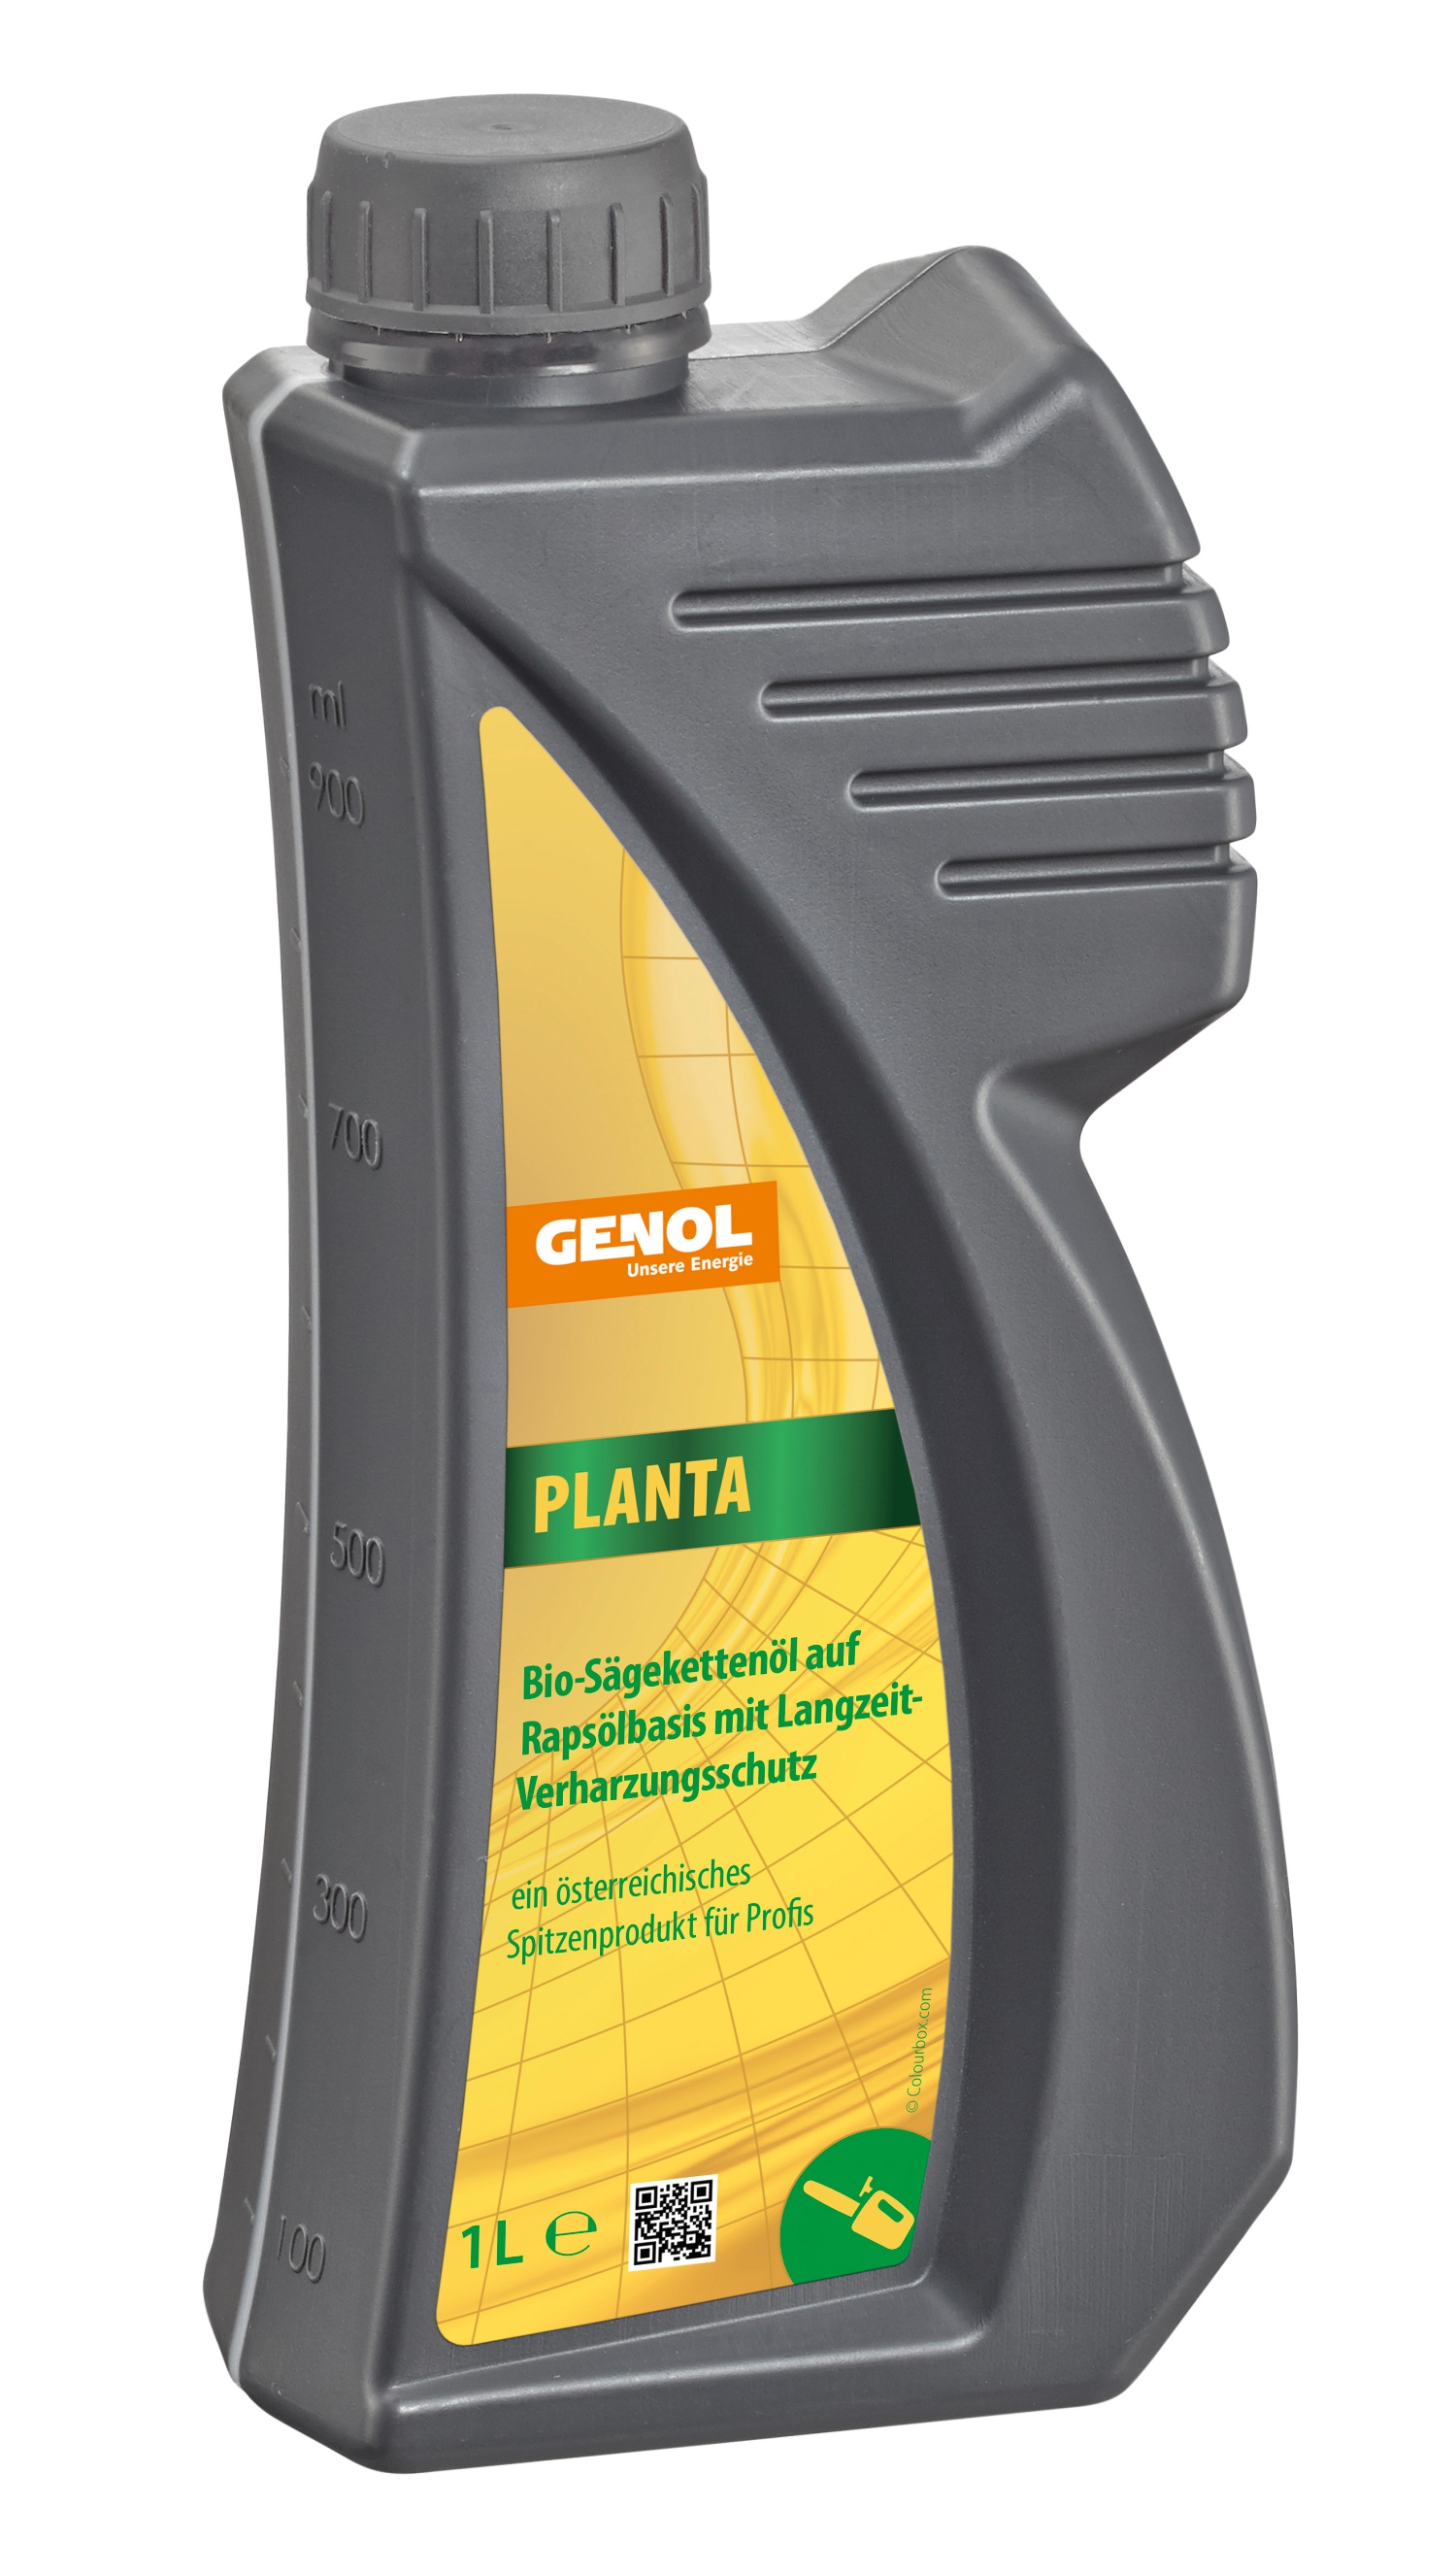 GENOL Planta 1L, Sägekettenöl